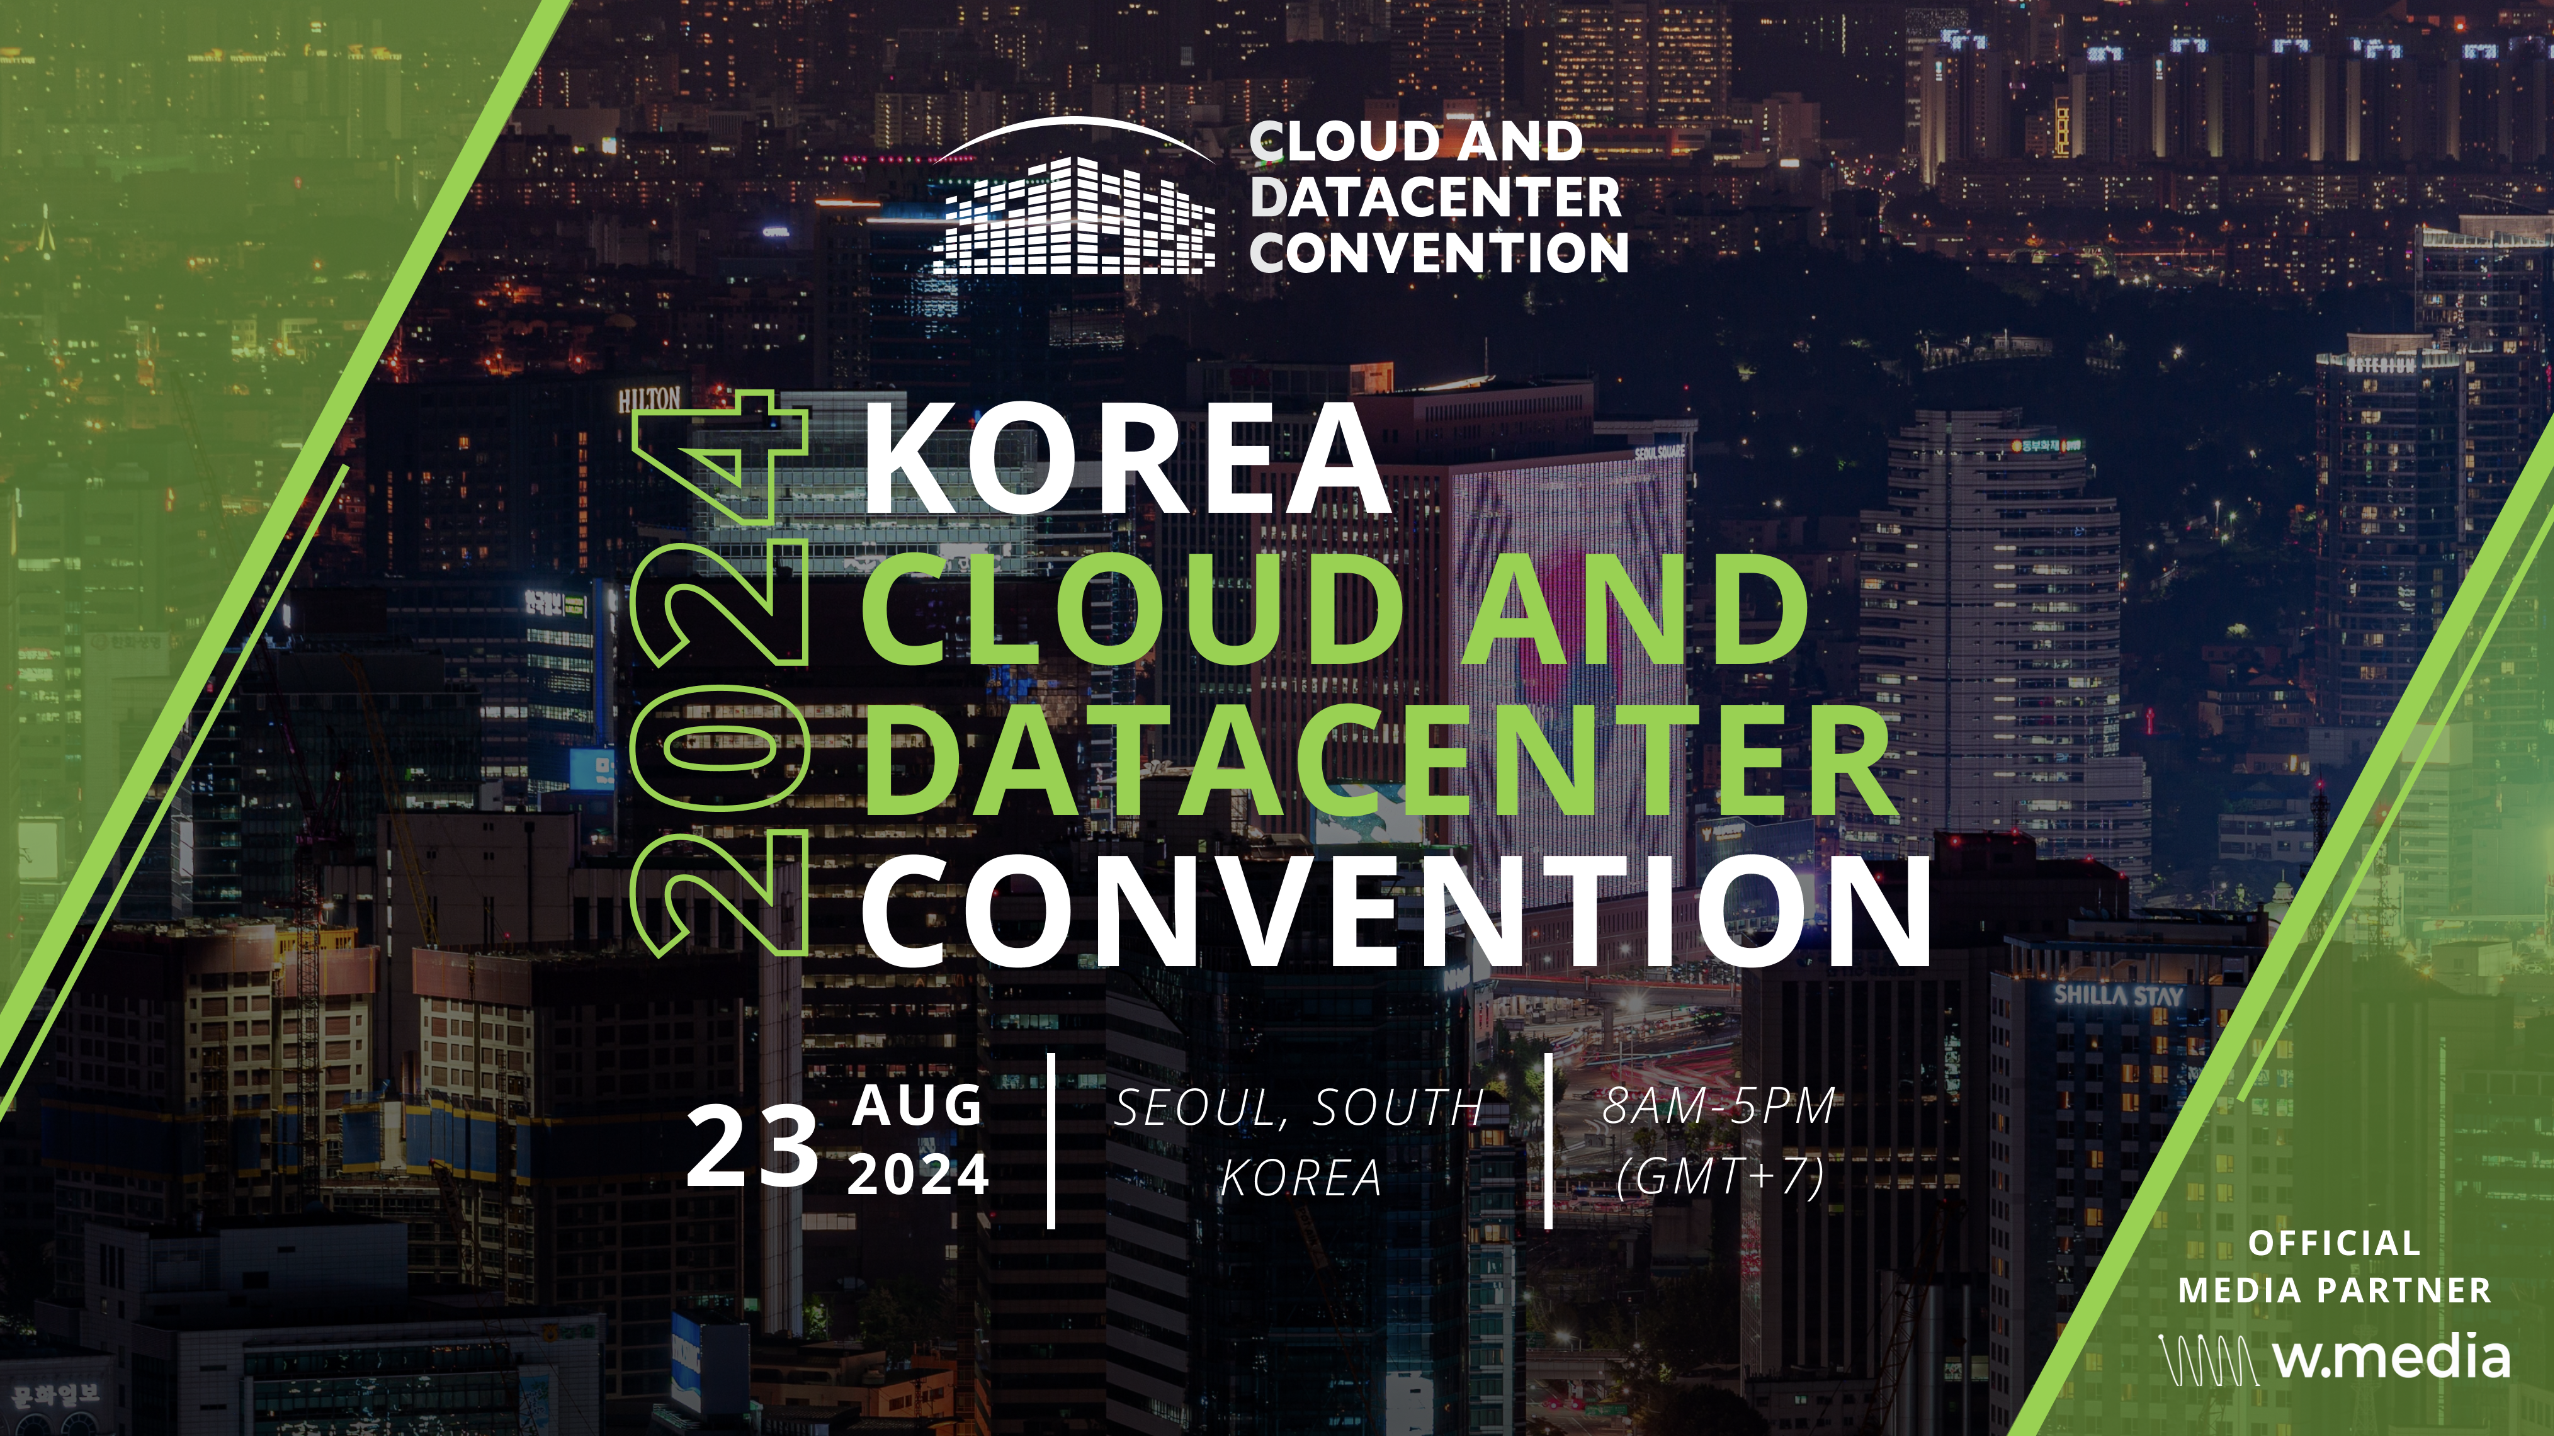 Korea Cloud & Datacenter Convention 2024 – COEX Convention & Exhibition Center – Seoul – August 23, 2024